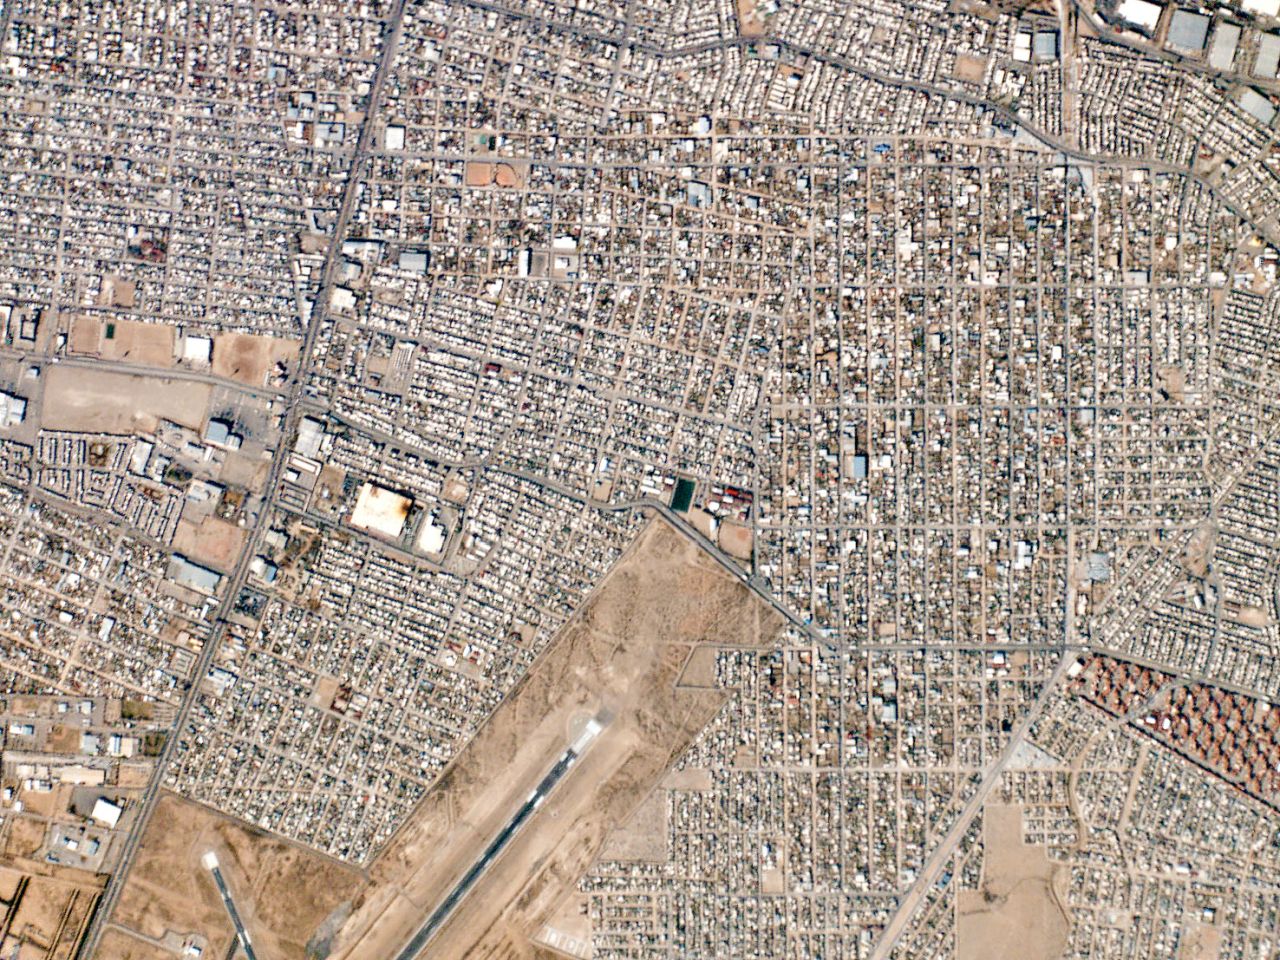 A view of Ciudad Juarez, Mexico.